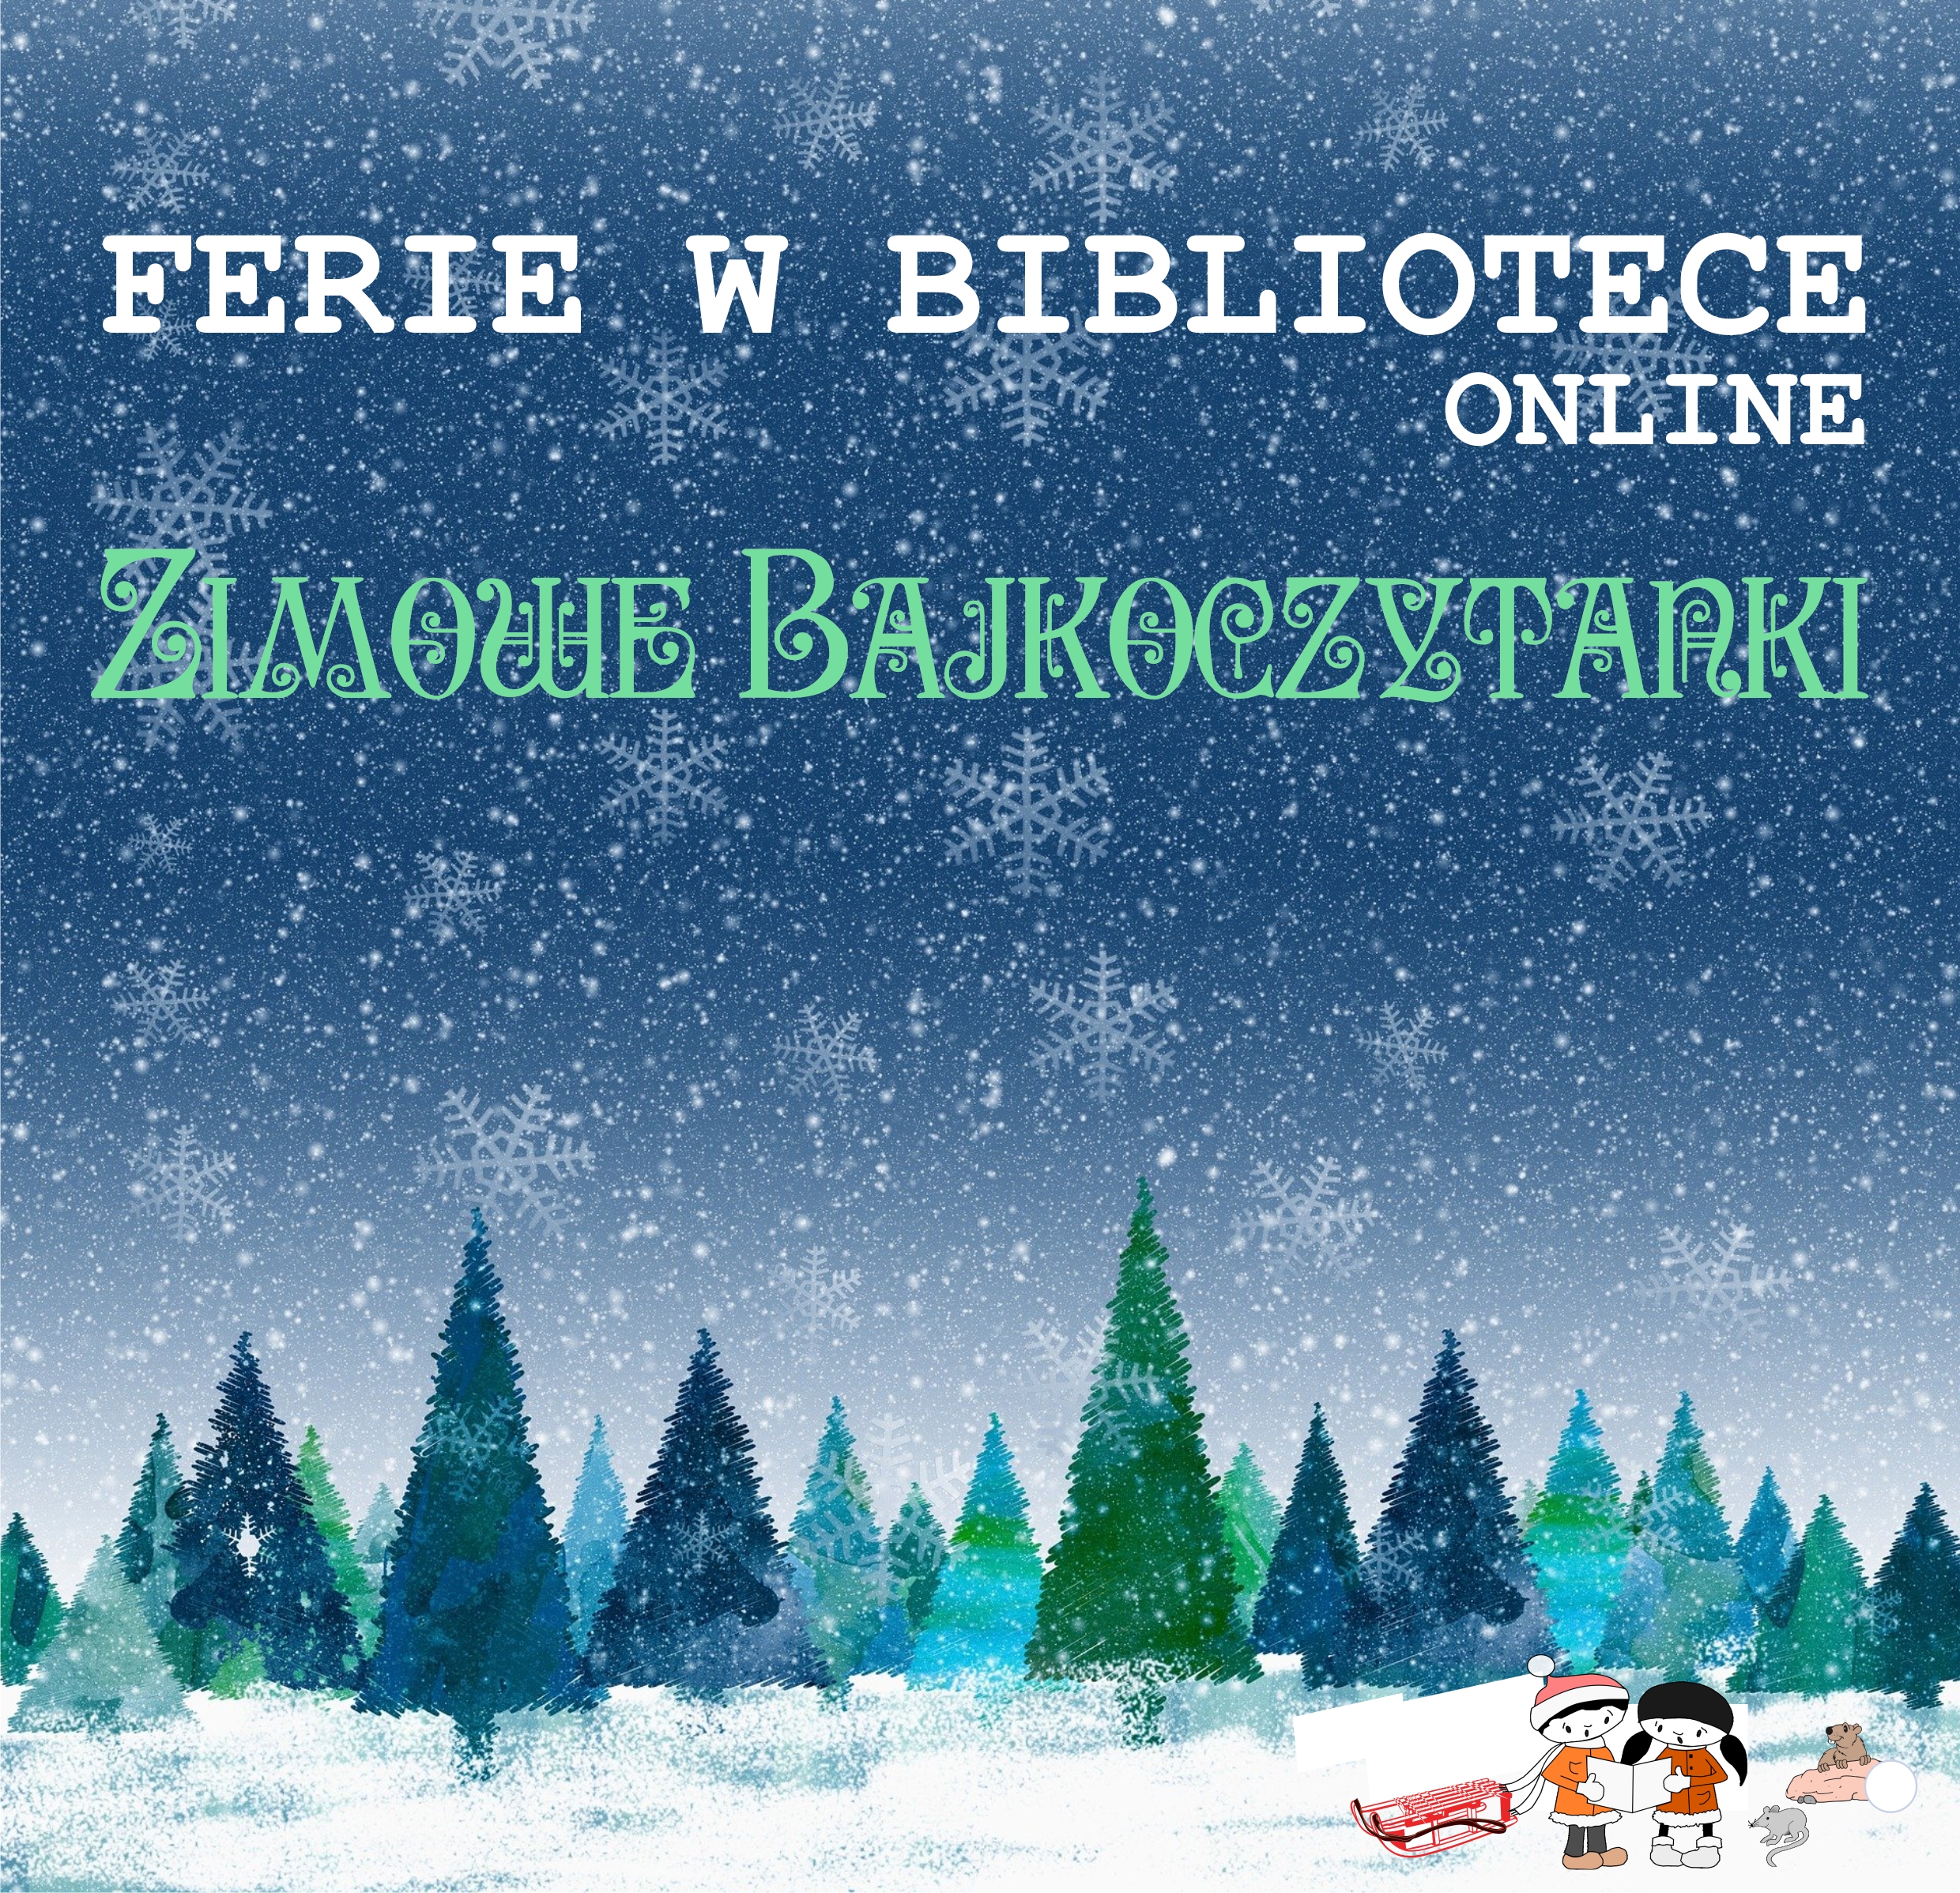 Ferie W Bibliotece 2021 Online - Zimowe Bajkoczytanki - Grafika Informacyjna